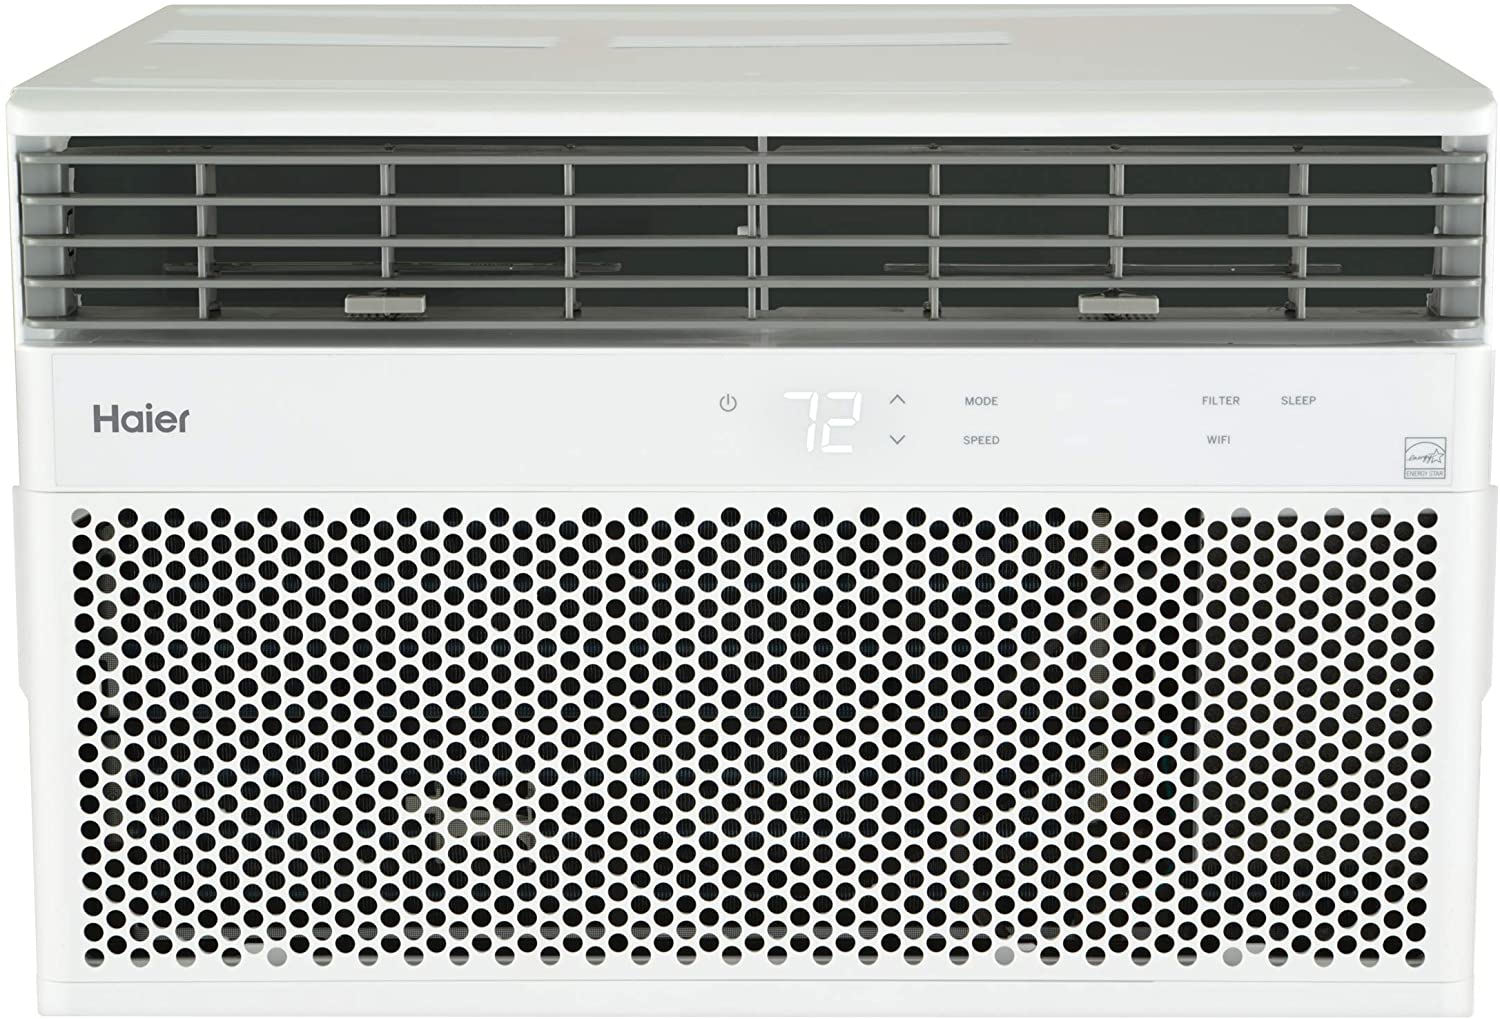 Haier 8,000 BTU Window Air Conditioner Specs